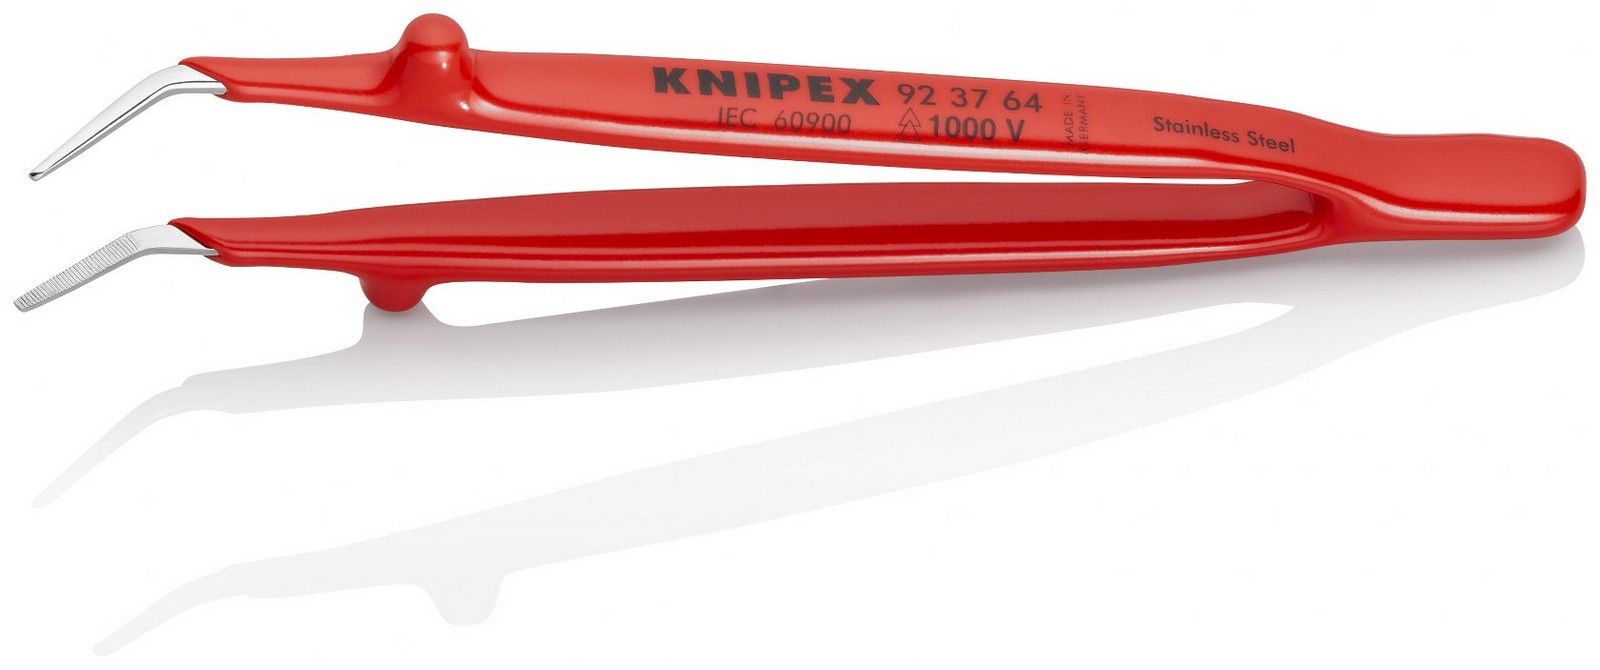 Knipex precizna pinceta - kriva, 1000V VDE izolovana (92 37 64)